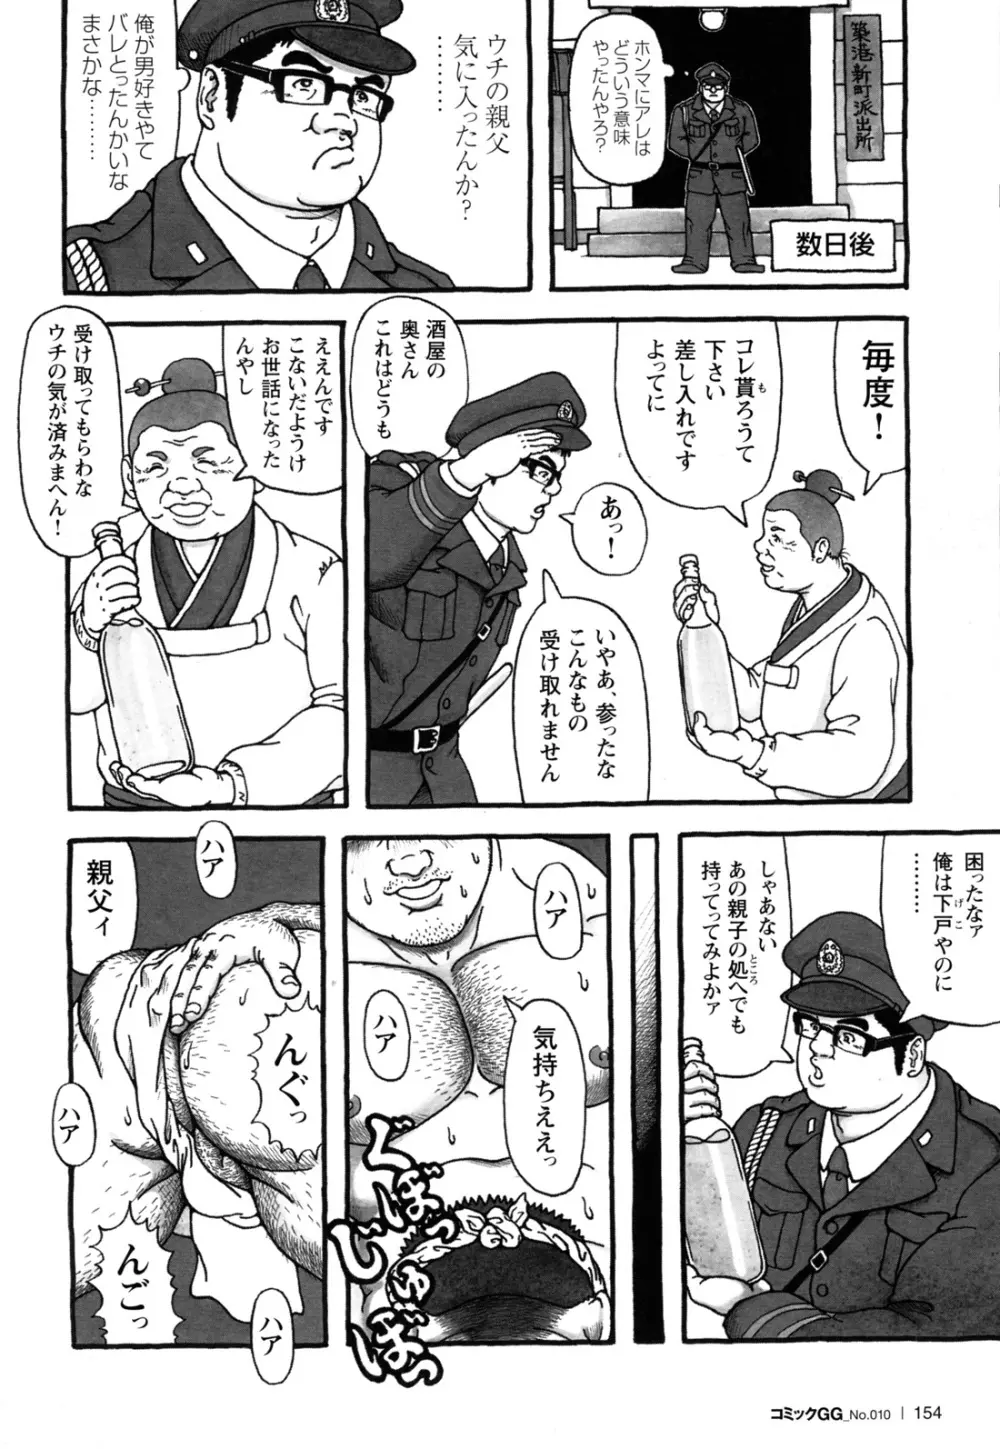 コミックG.G. No.10 のぞき・レイプ・痴漢 146ページ